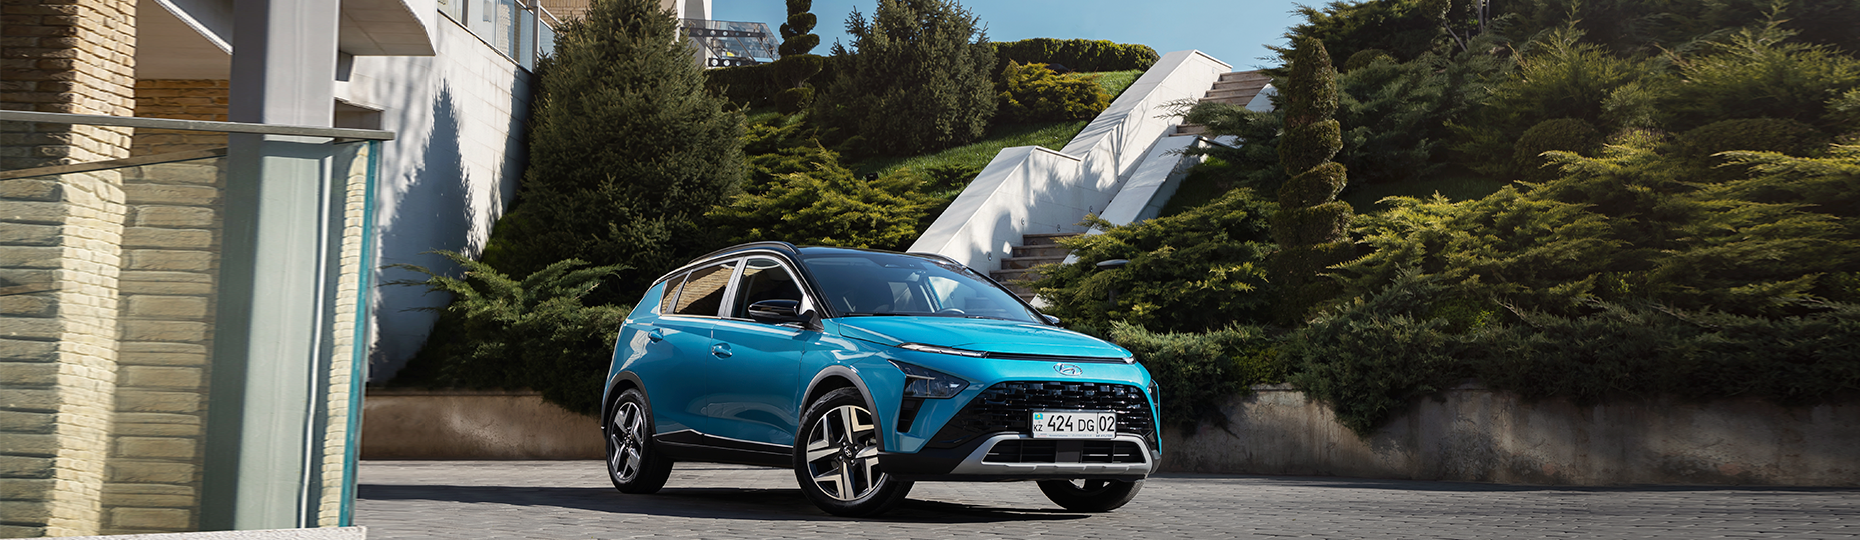 Комфорт нового Hyundai Bayon | Официальный дилер в Костанае